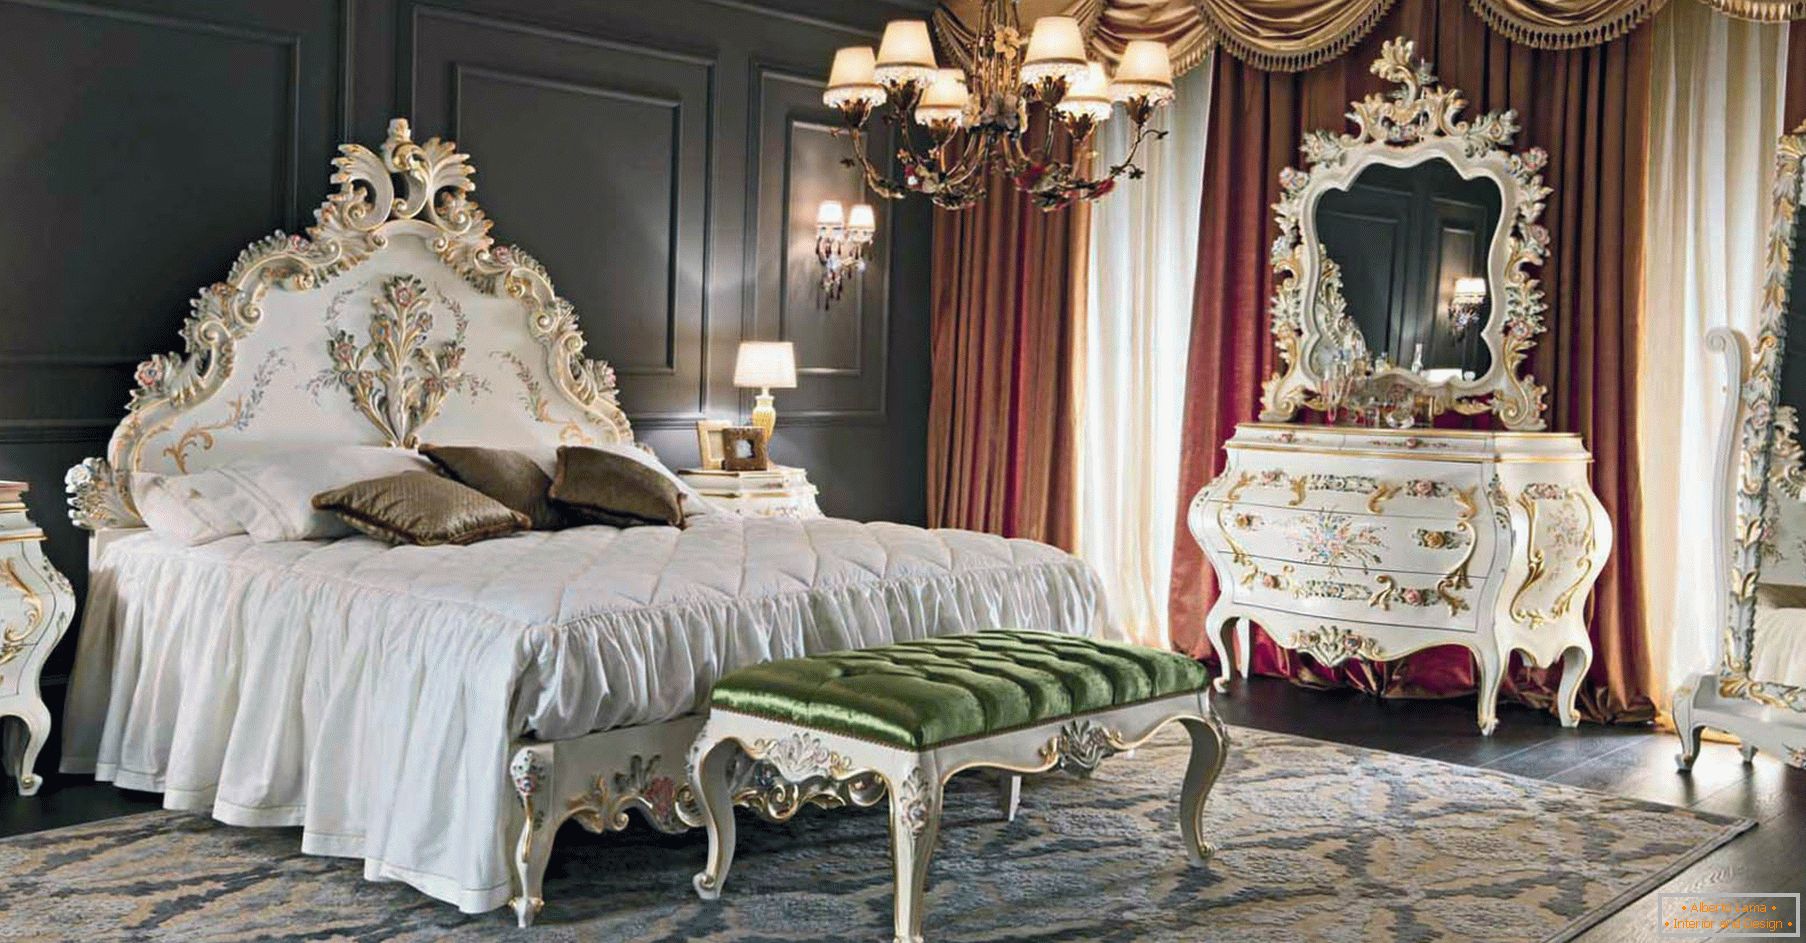 Za ukrašavanje spavaće sobe upotrijebljen je kontrast tamnosmeđe, zlatne, crvene i bijele boje. Namještaj je odabran prema stilu baroka.